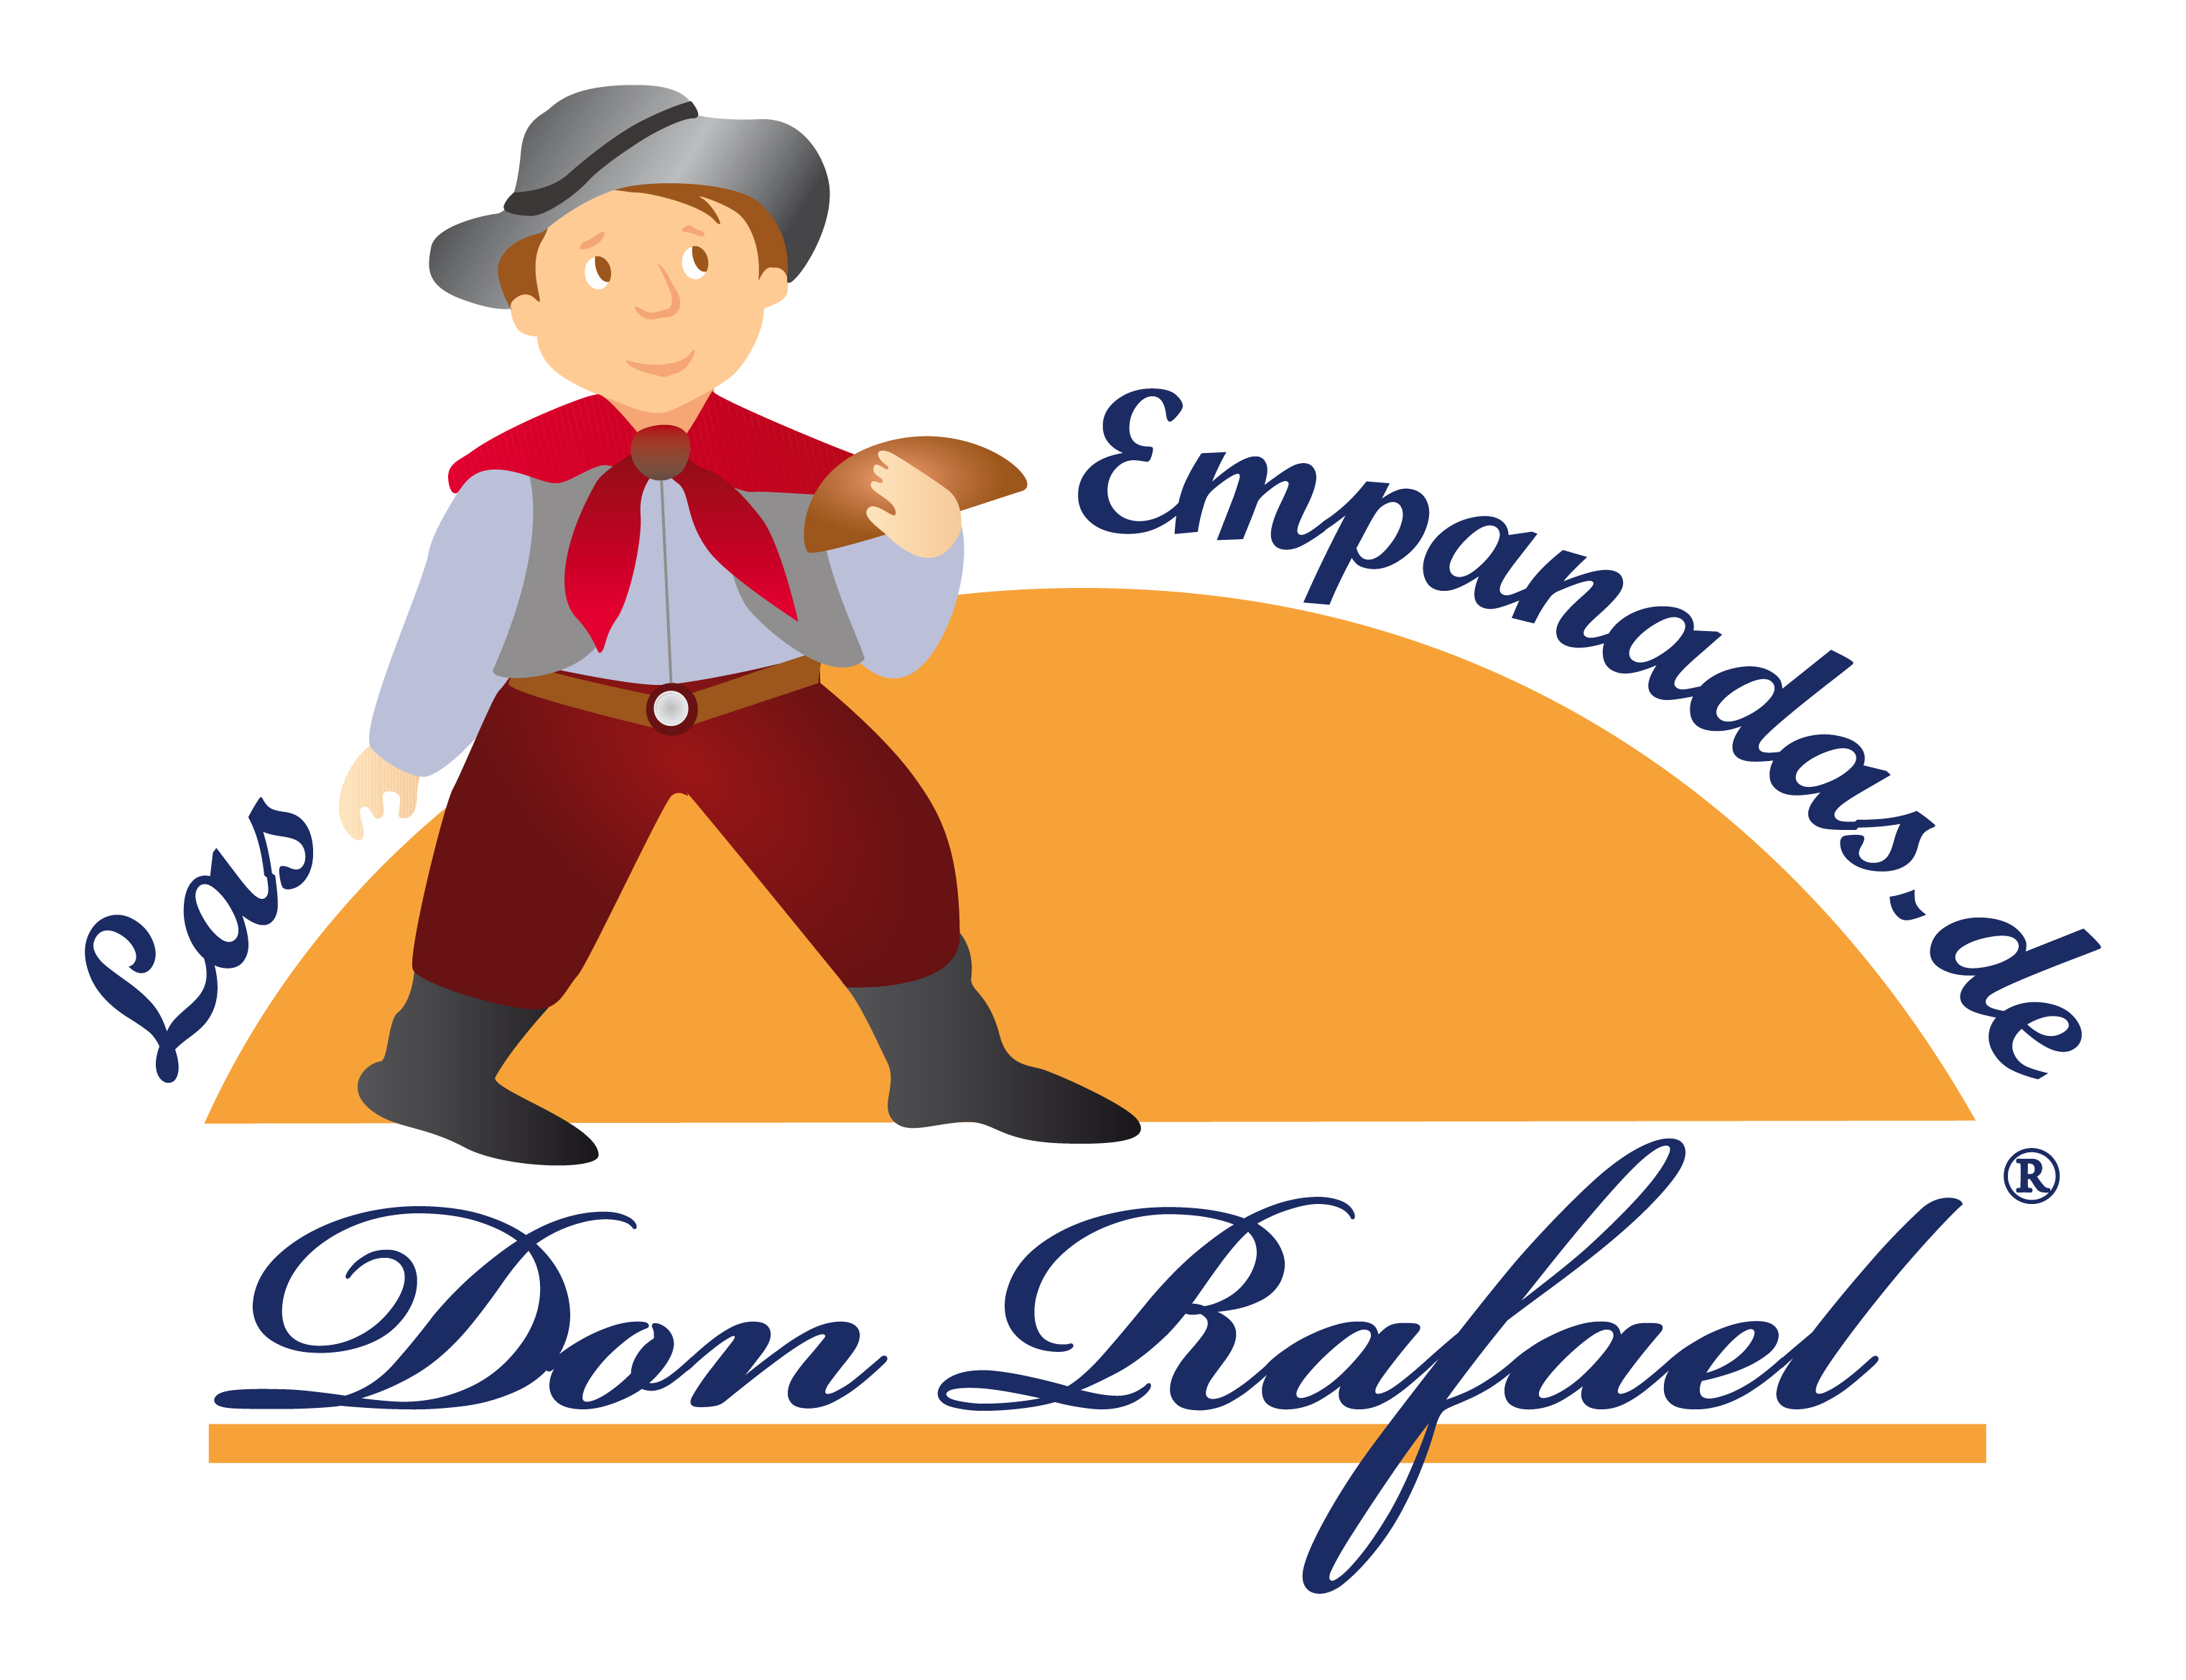 www.las-empanadas.de Don Rafael